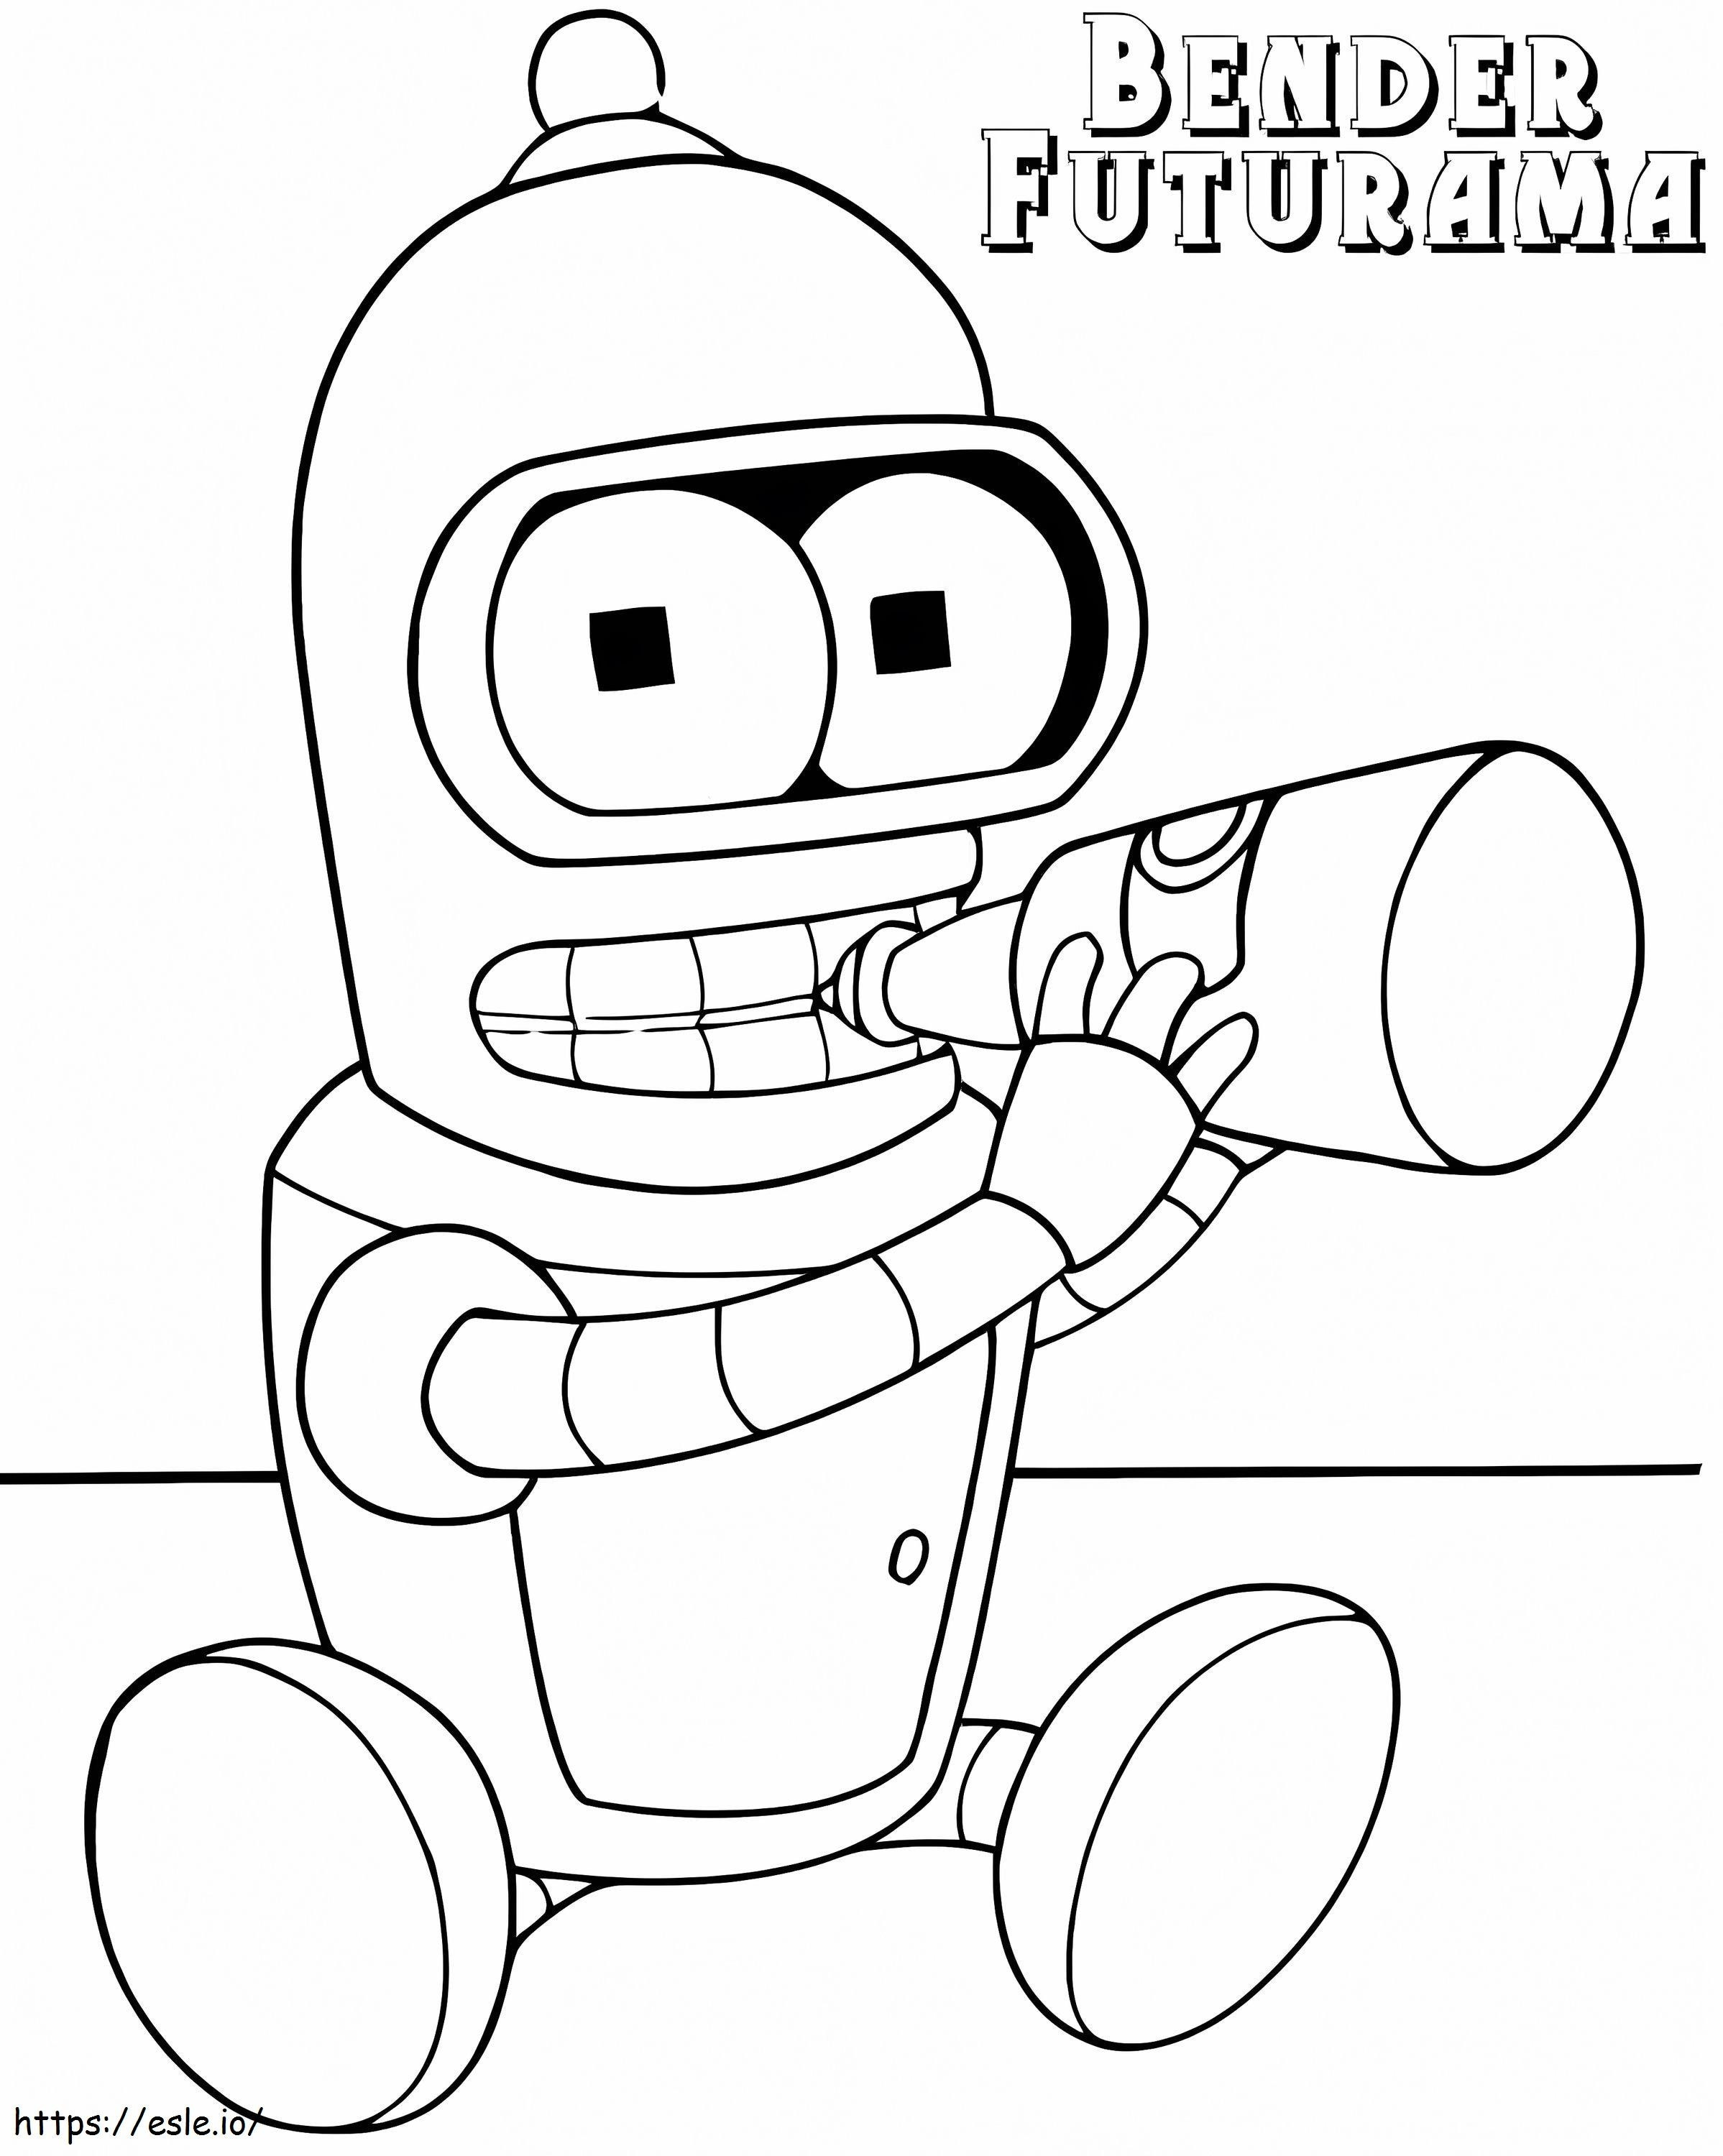 Baby Bender aus Futurama ausmalbilder